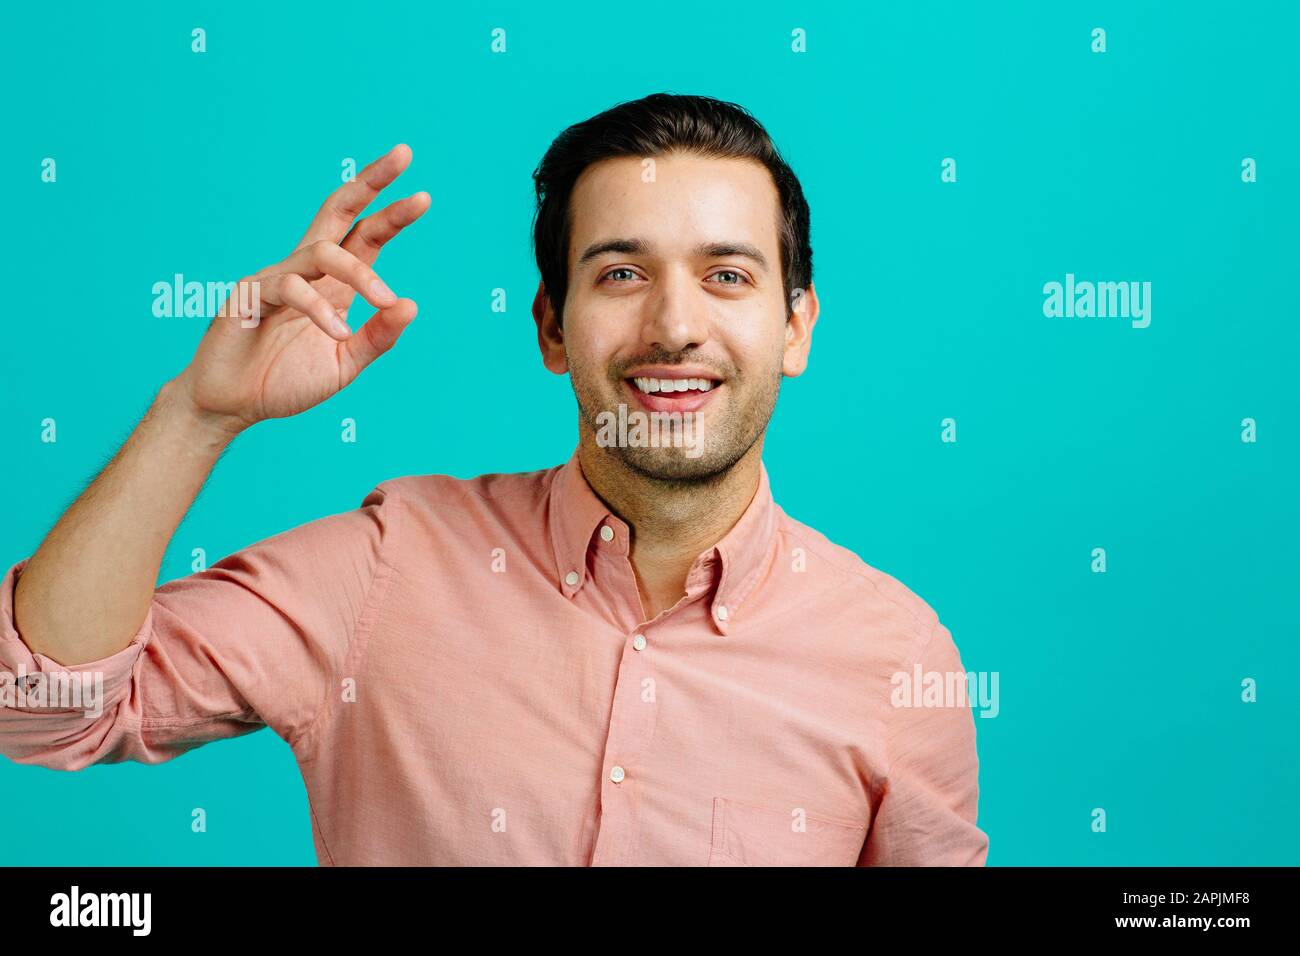 Porträt eines jungen erwachsenen Mannes lächelnd, isoliert auf blauem Studiohintergrund Stockfoto